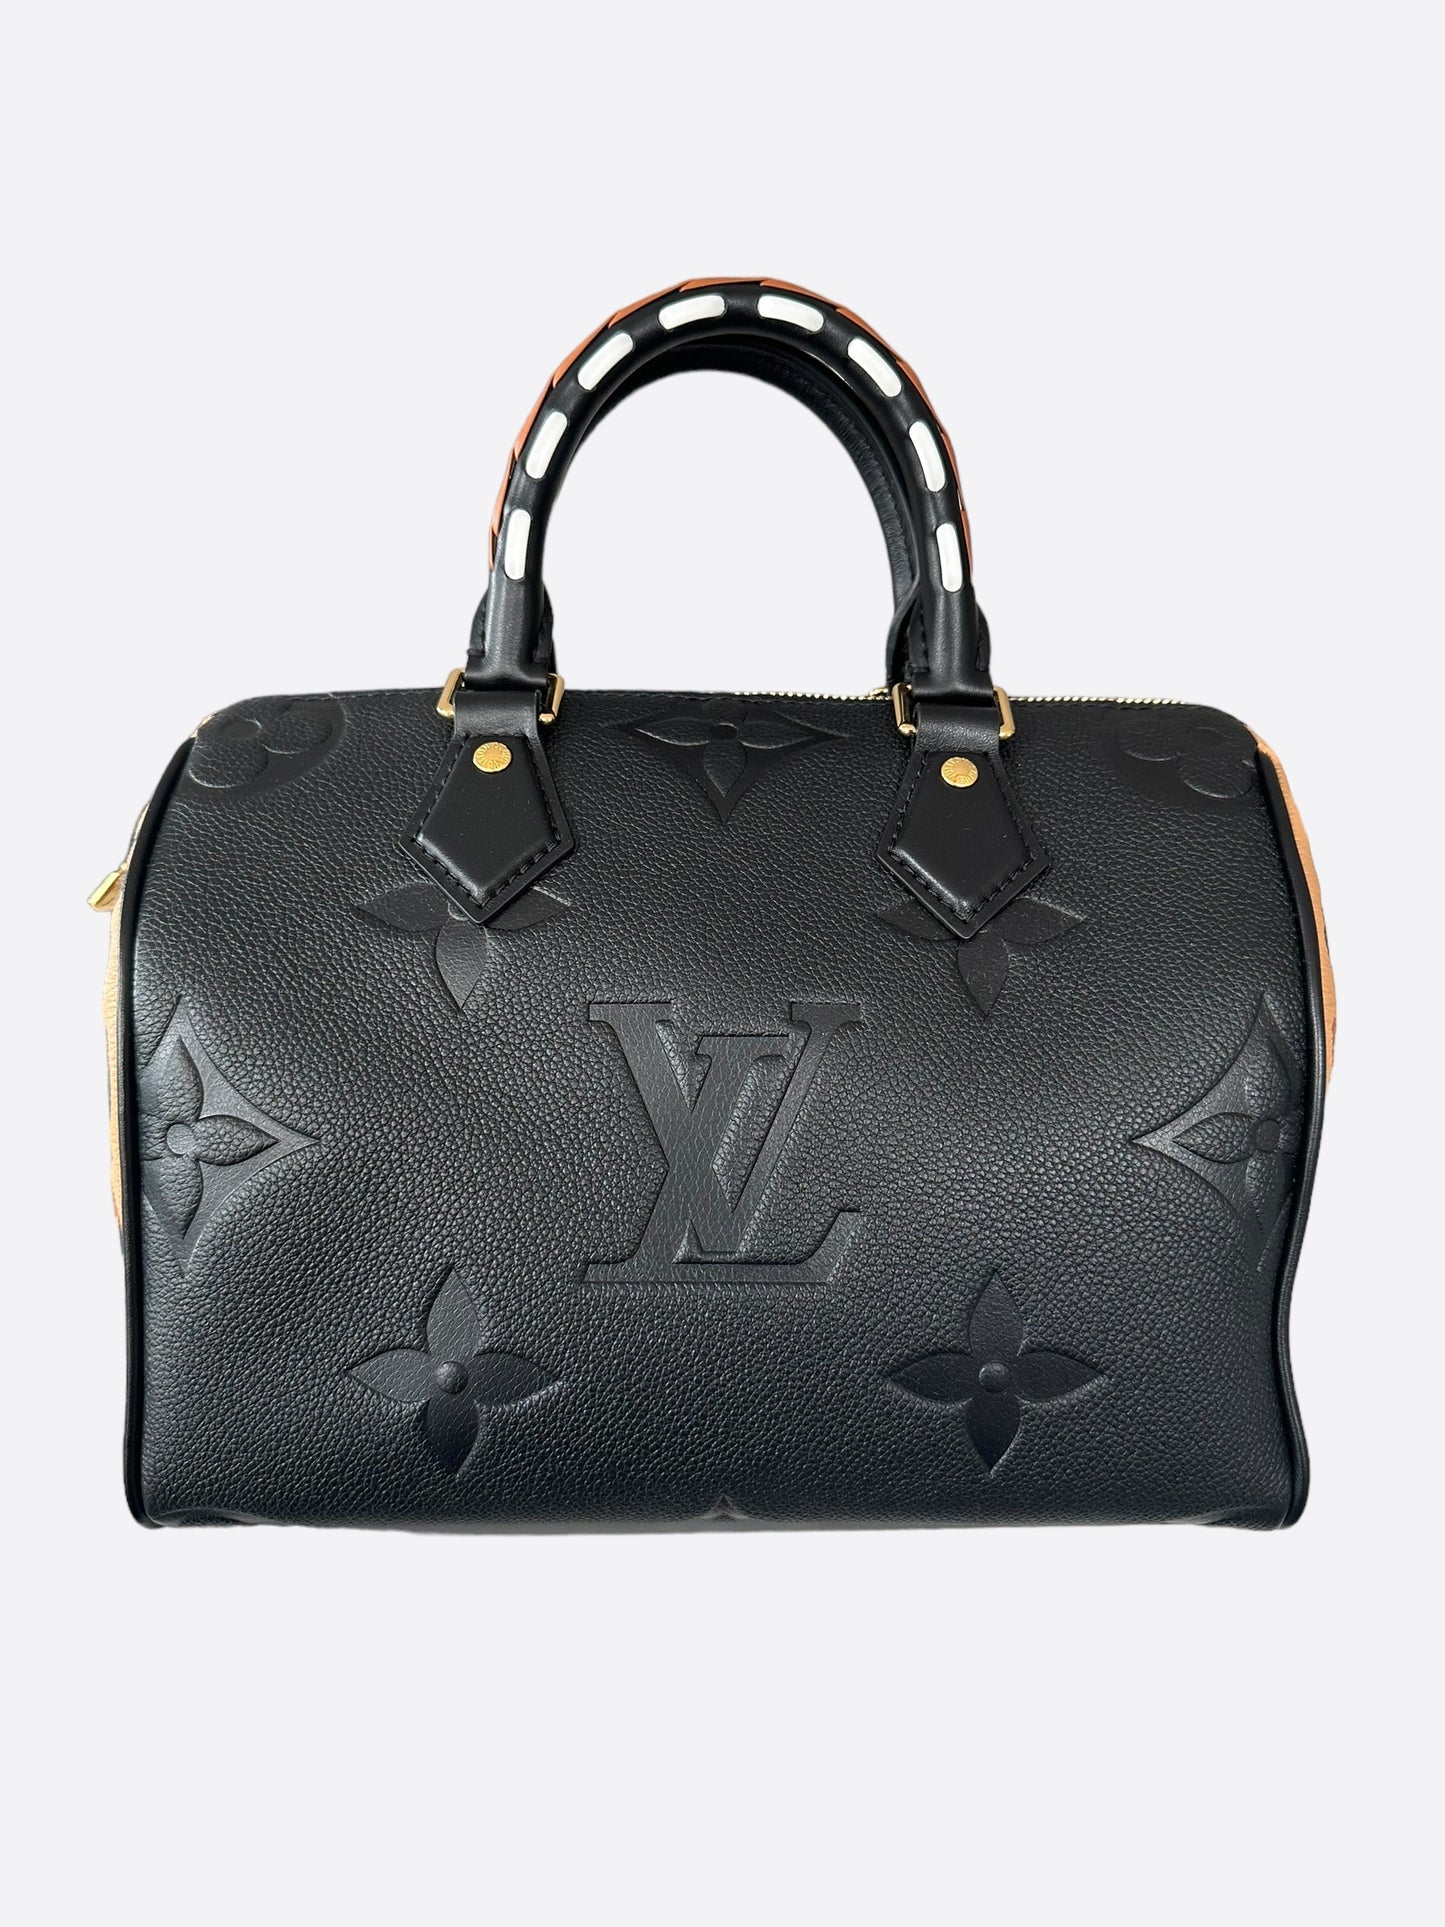 Louis Vuitton Black Empreinte Monogram Wild At Heart Speedy 25